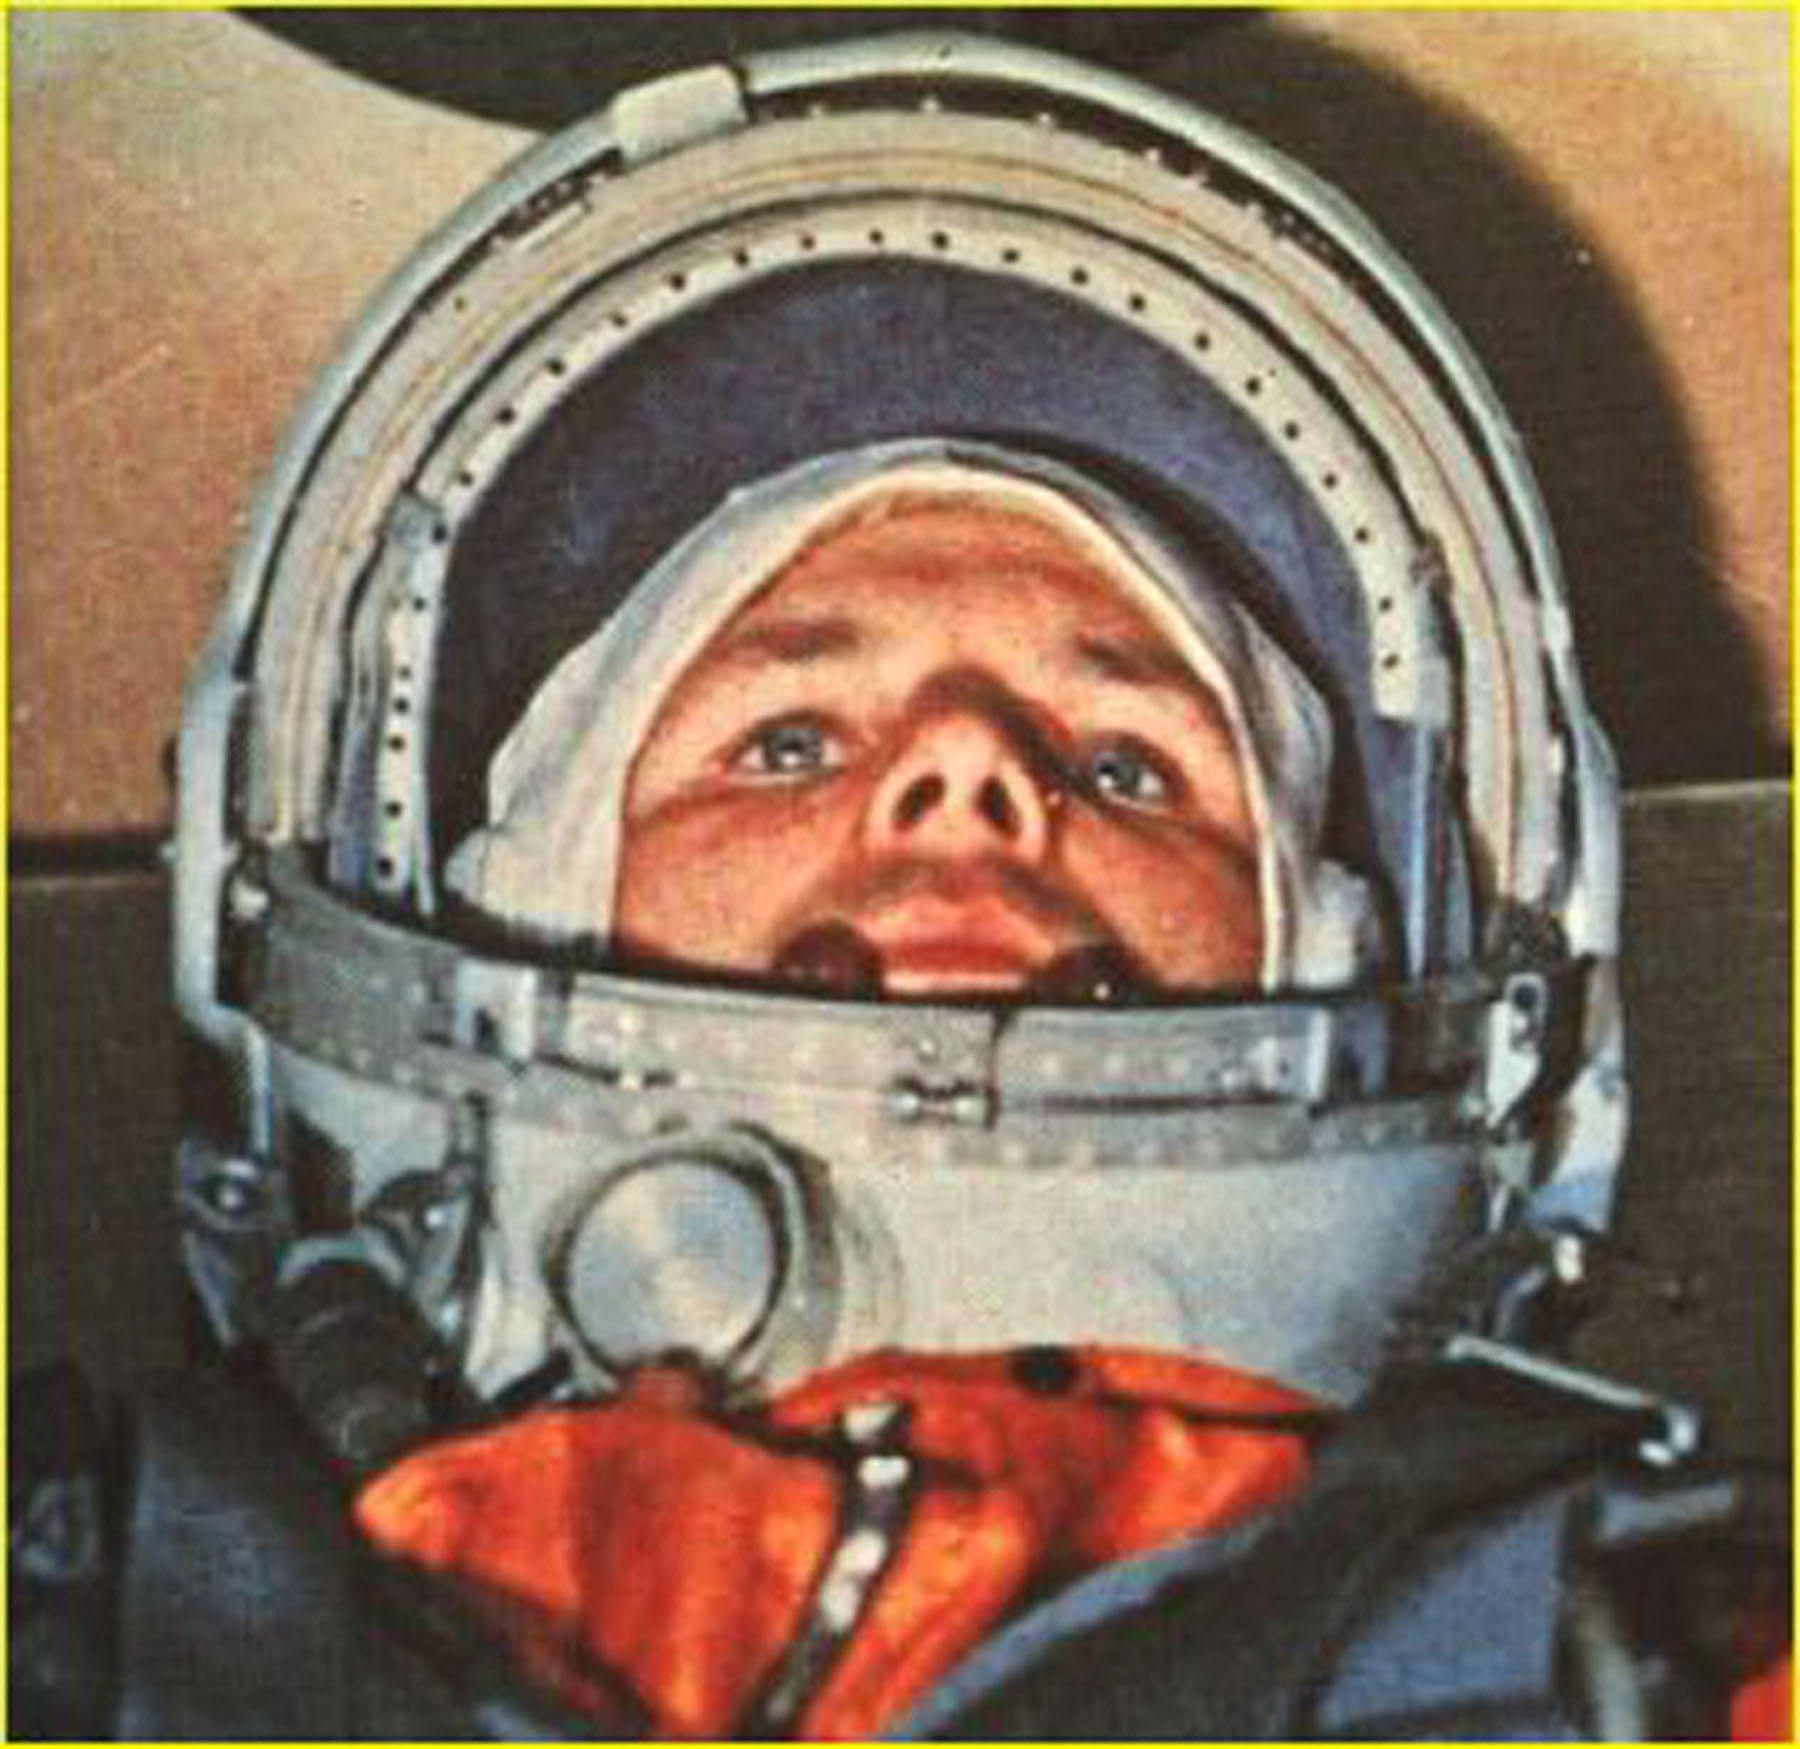 1961 год космос событие. Гагарин в кабине Восток 1.